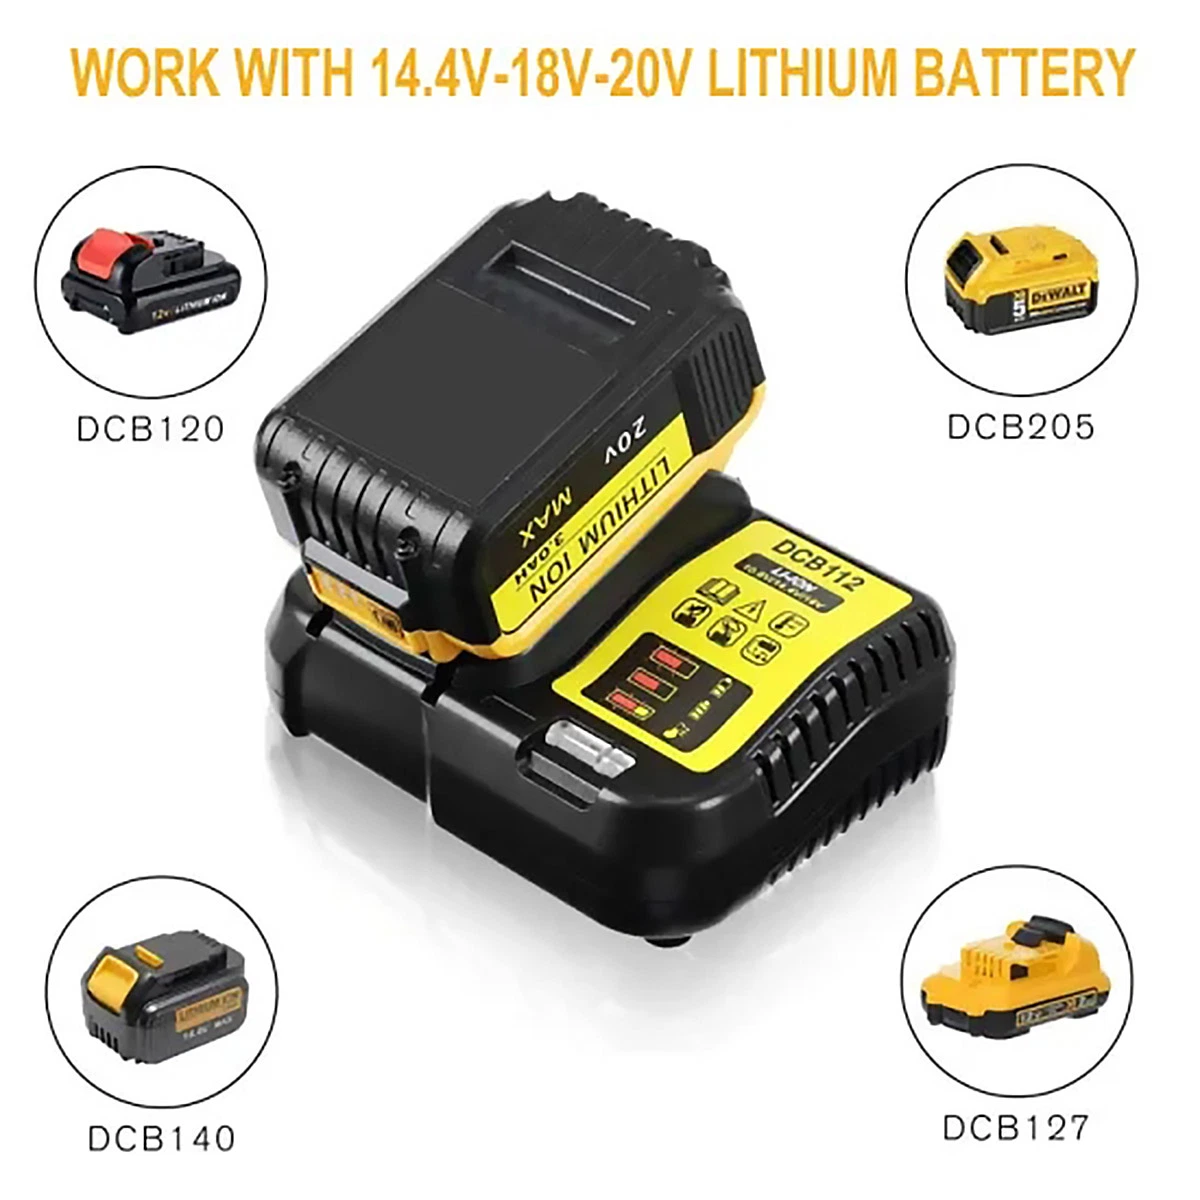 Dcb112 Dew Battery Charger for Li-ion 10.8V 12V 14.4V 18V 20V Power Tools Cordless Drills Battery Charger Dcb140